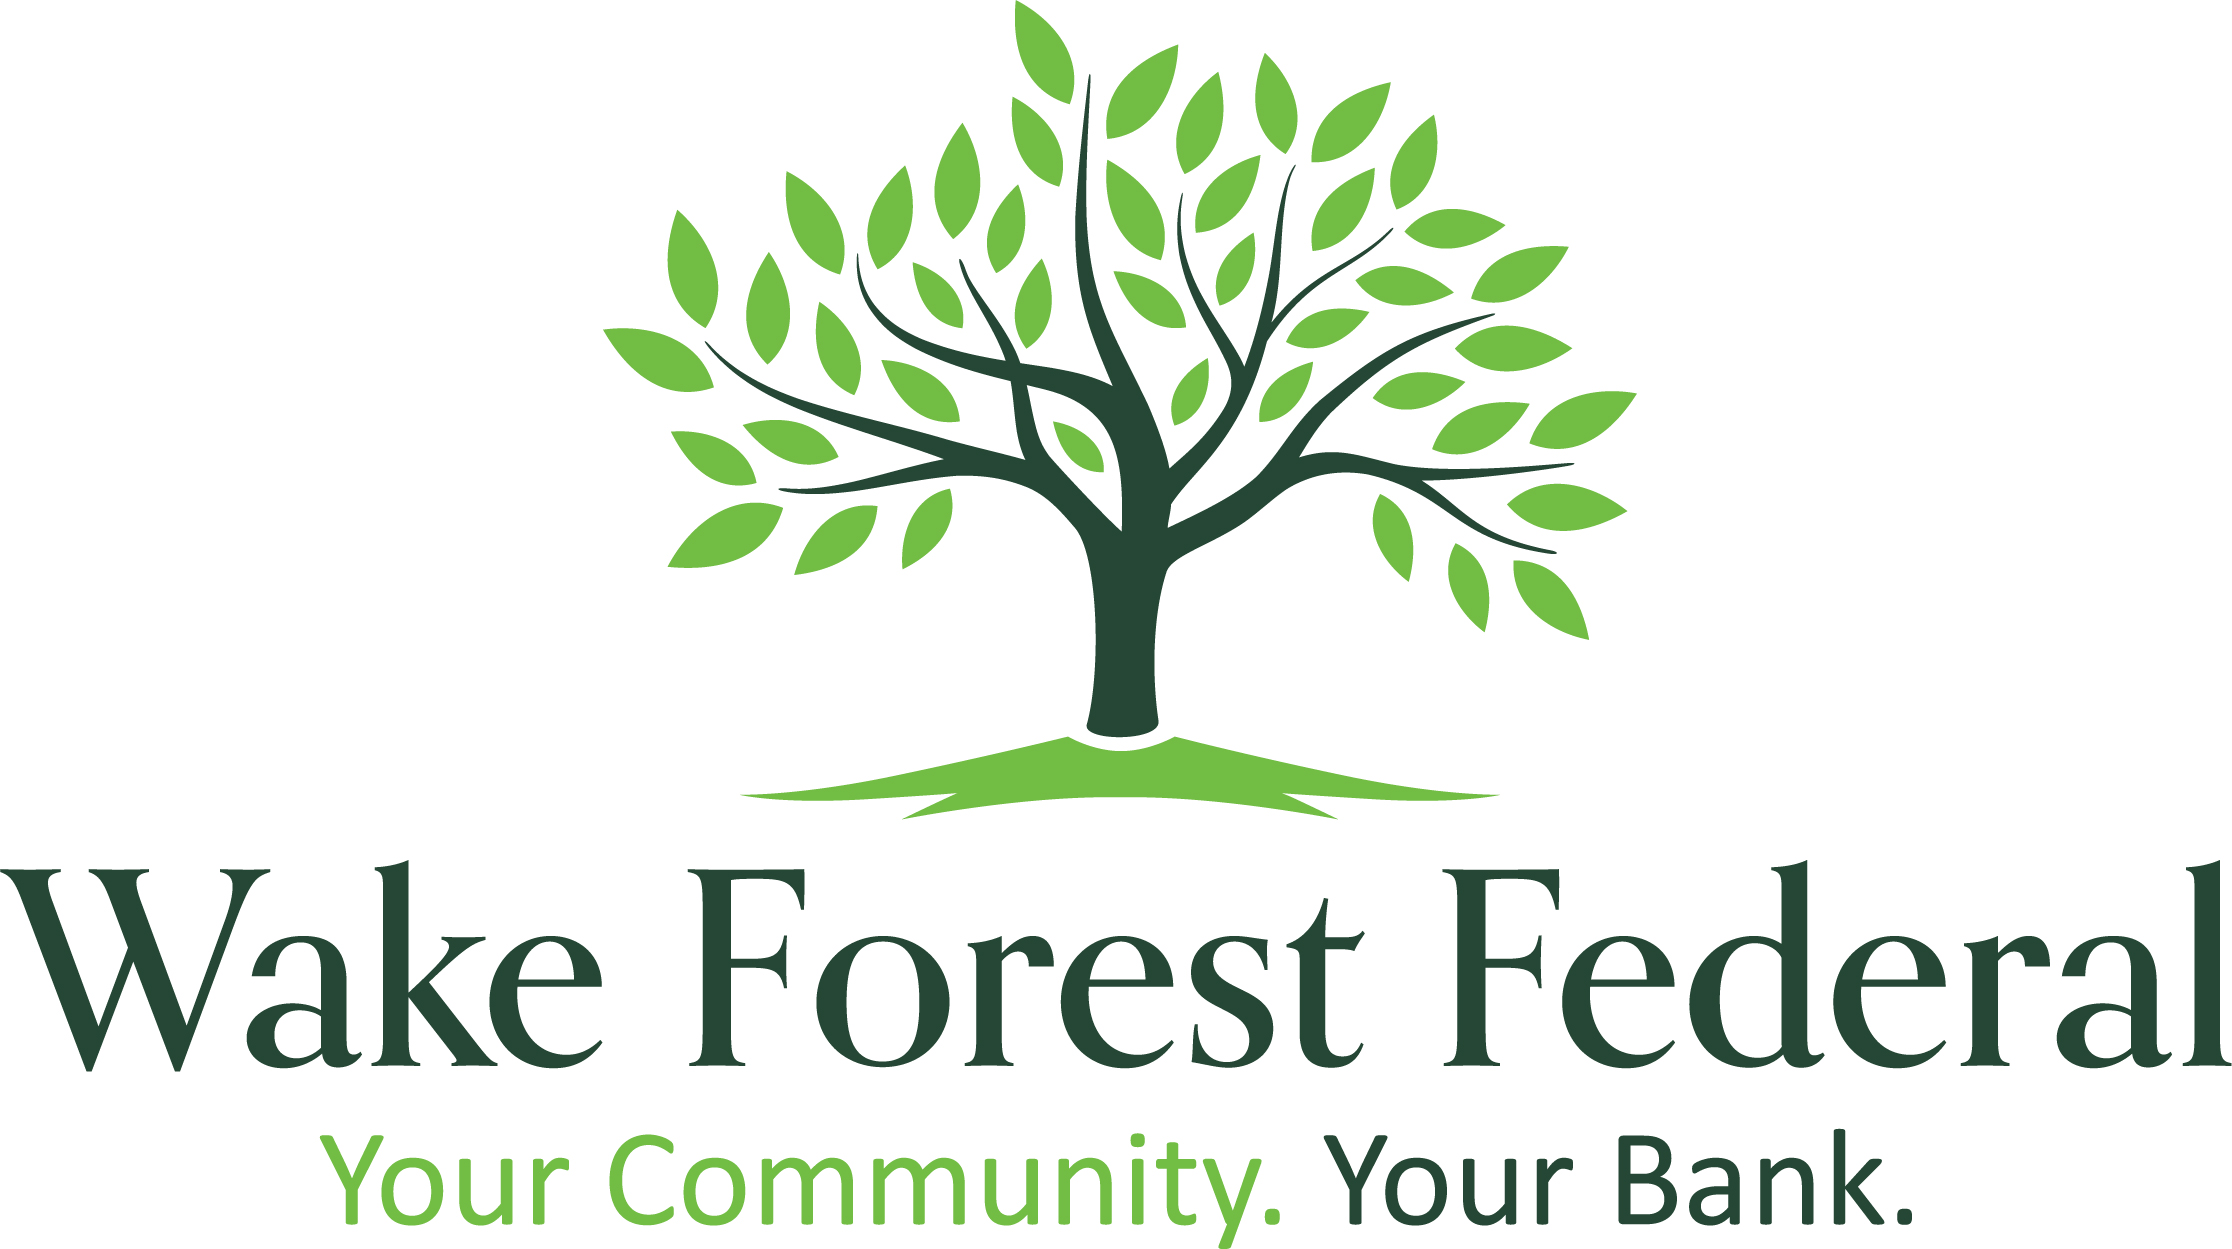 Wake Forest Federal Logo